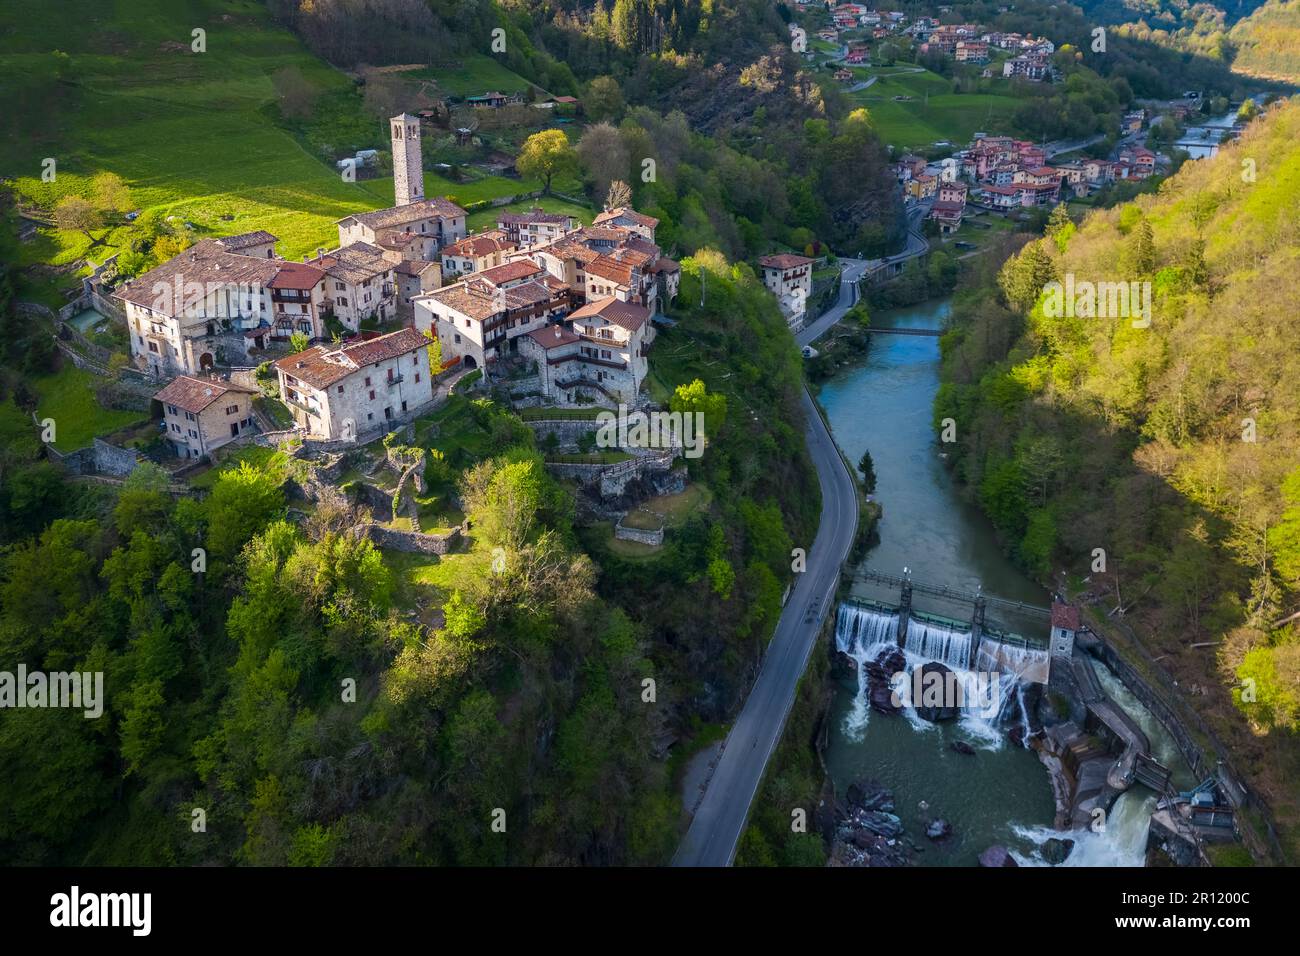 Aerial view of the old village of Cornello dei Tasso, Camerata Cornello, Bergamo province, Brembana valley, Lombardy, Italy, Europe. Stock Photo